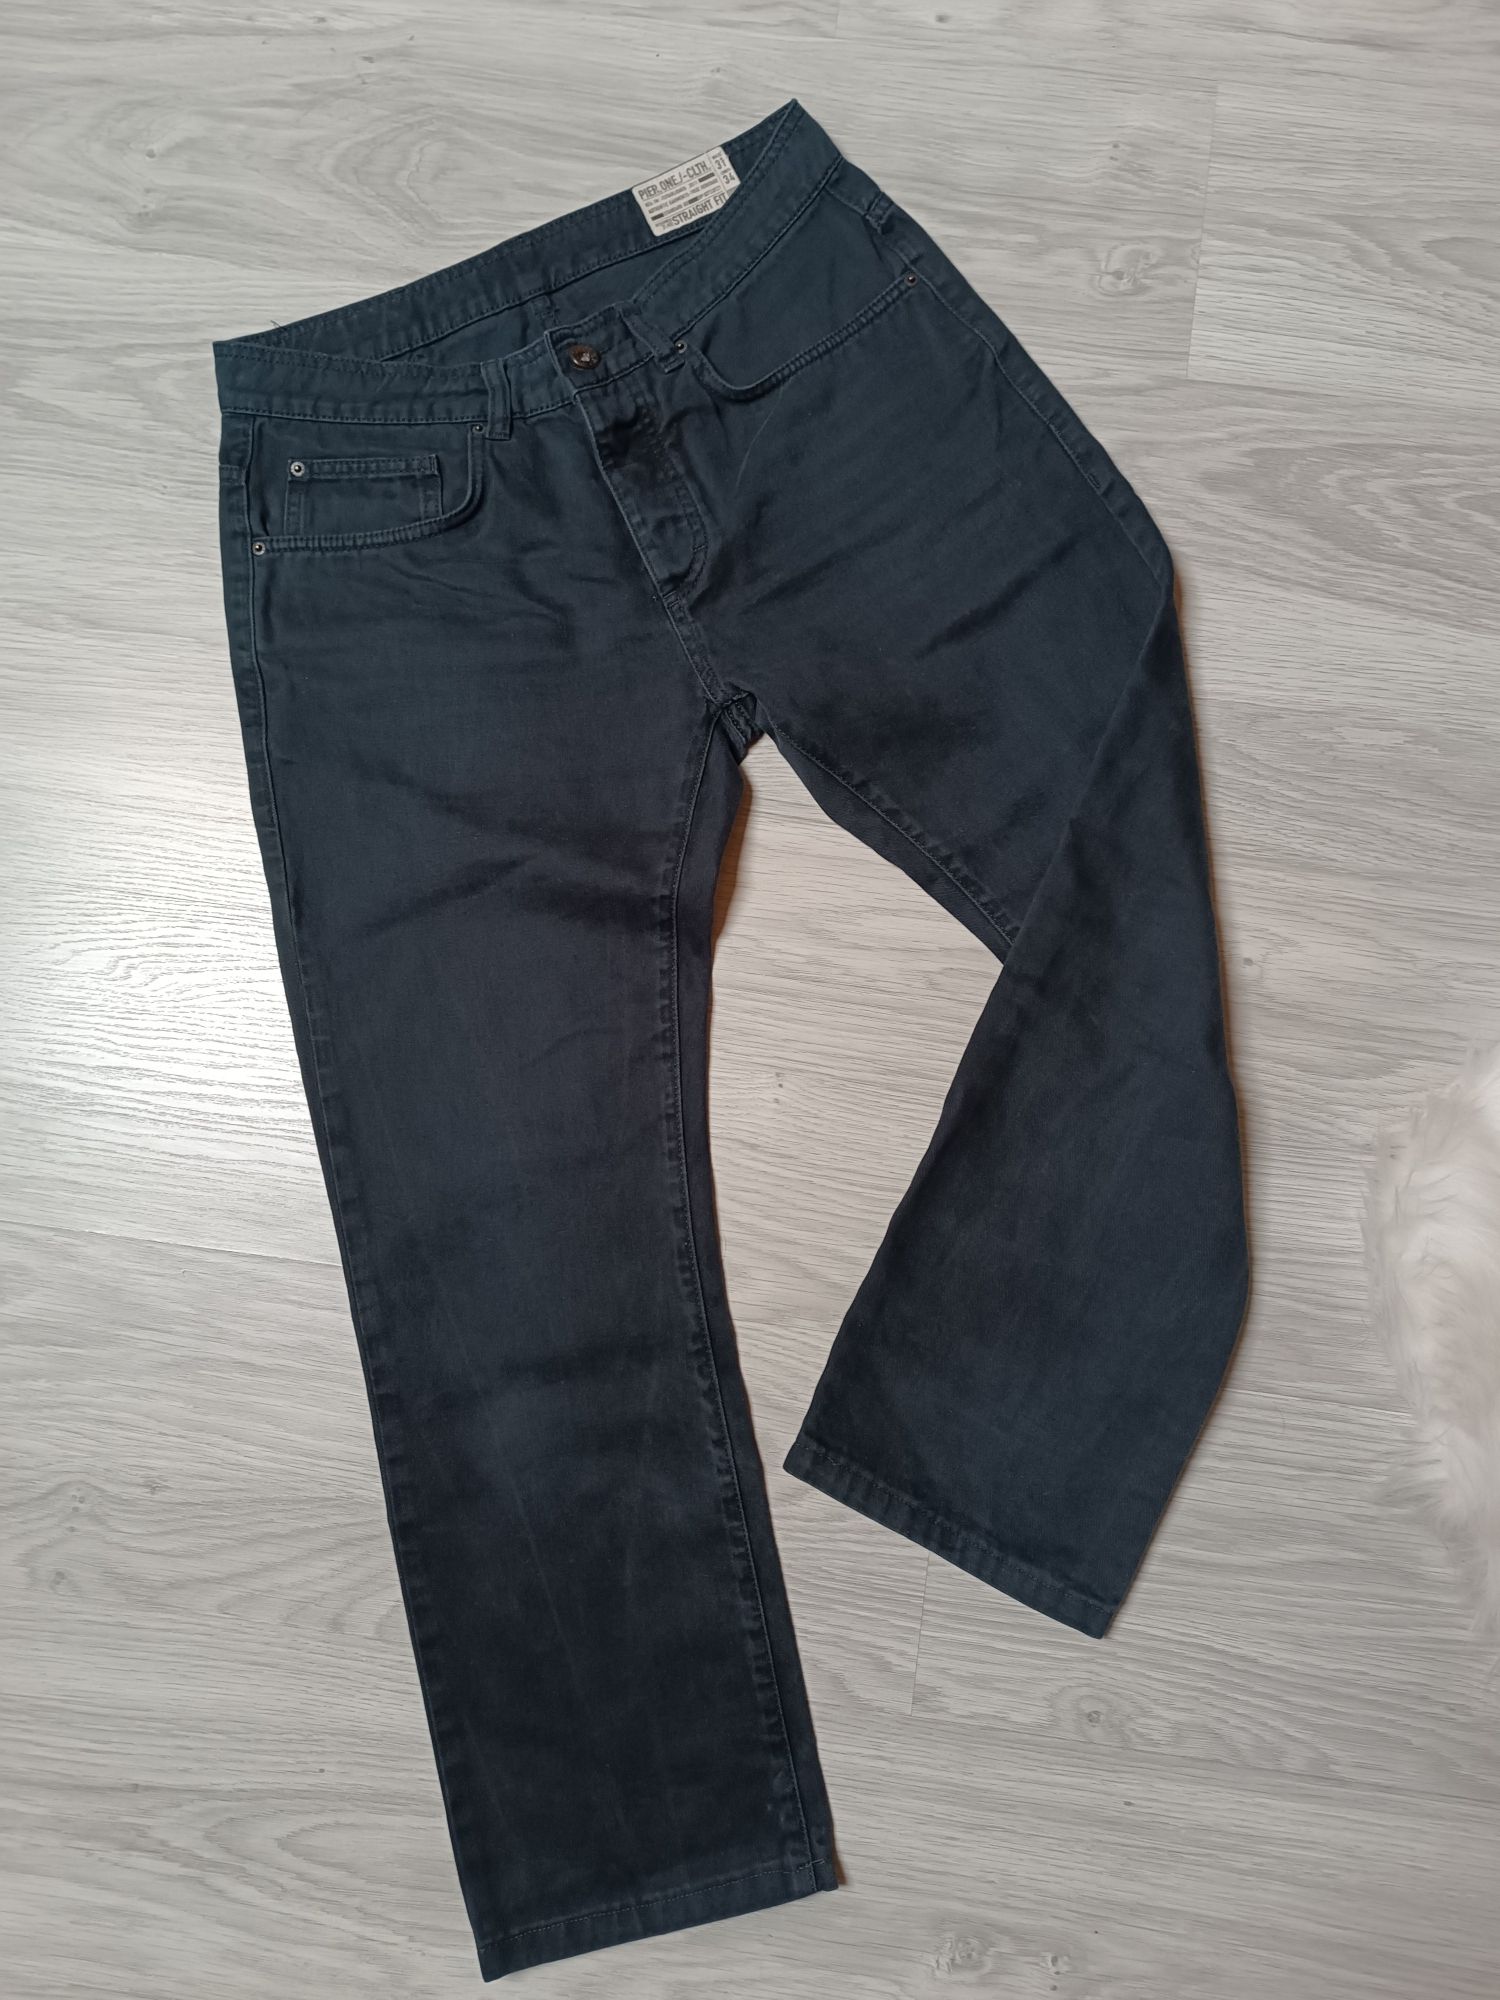 Pier One spodnie jeansowe męskie basic casual dżinsy klasyczne 31/34 M